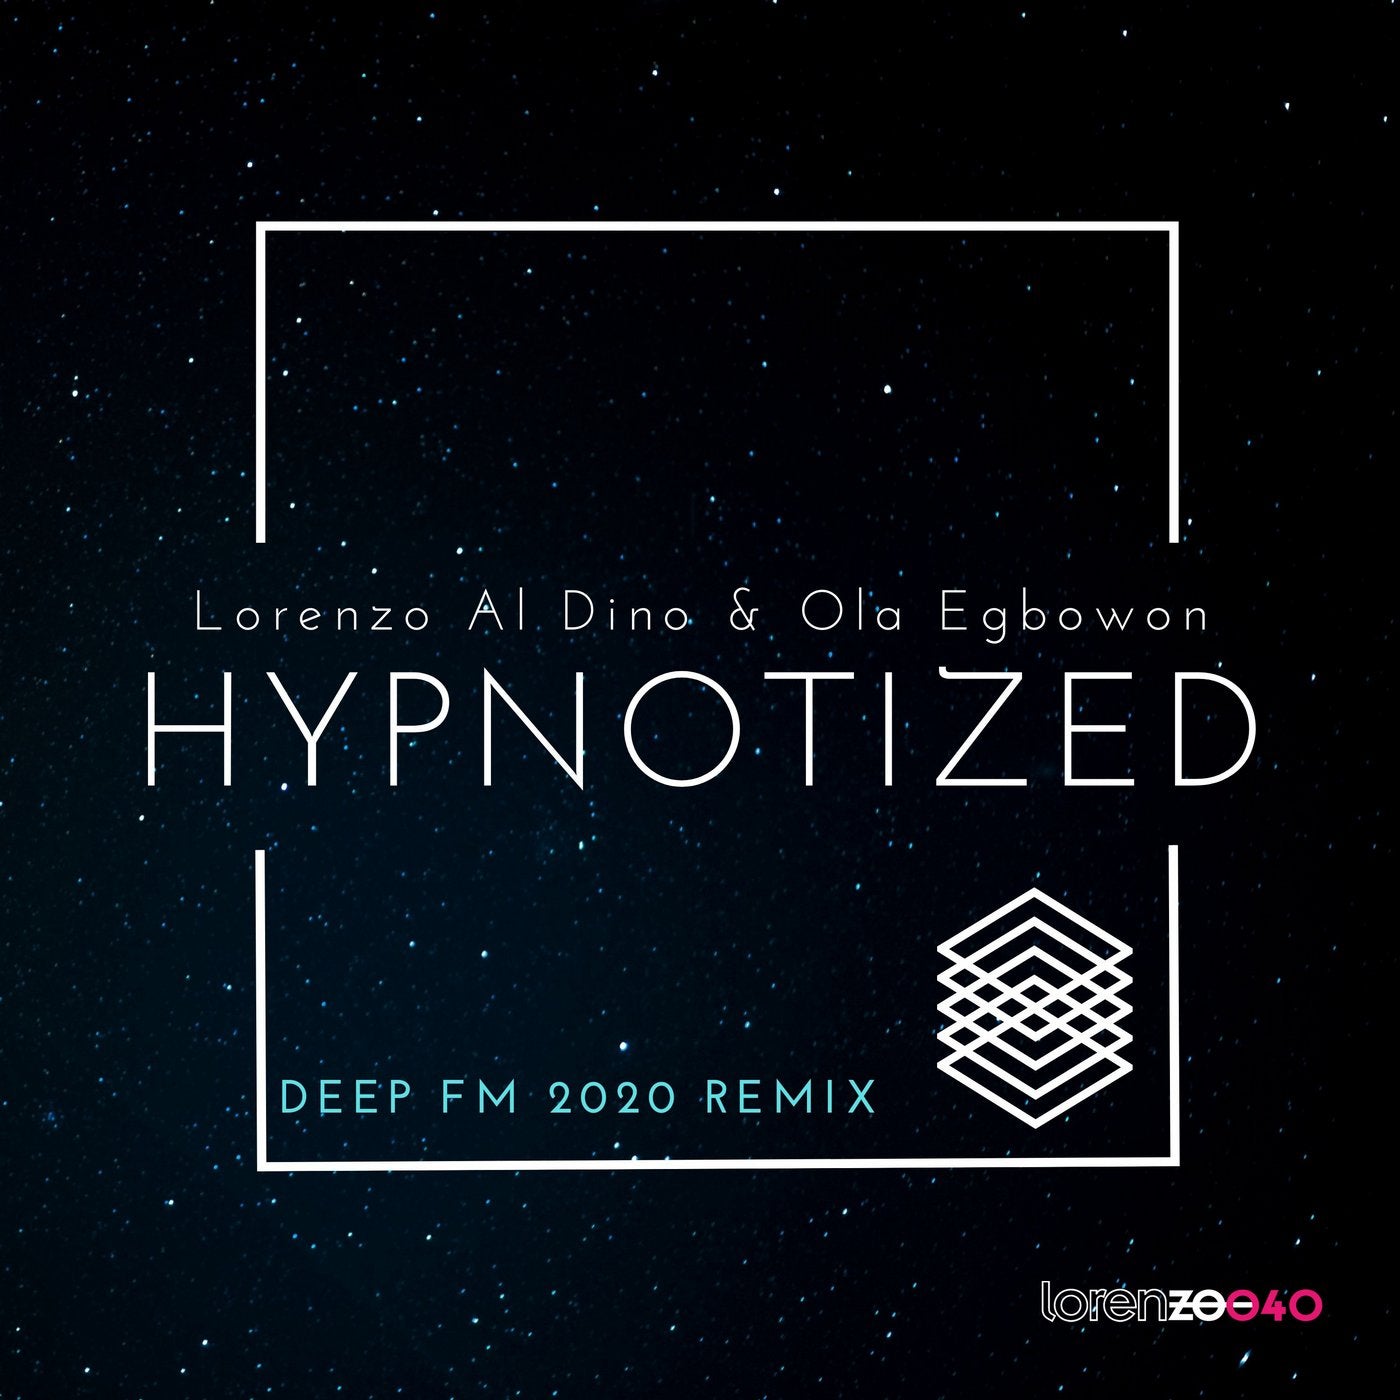 Hypnotized - Deep FM 2020 Remix